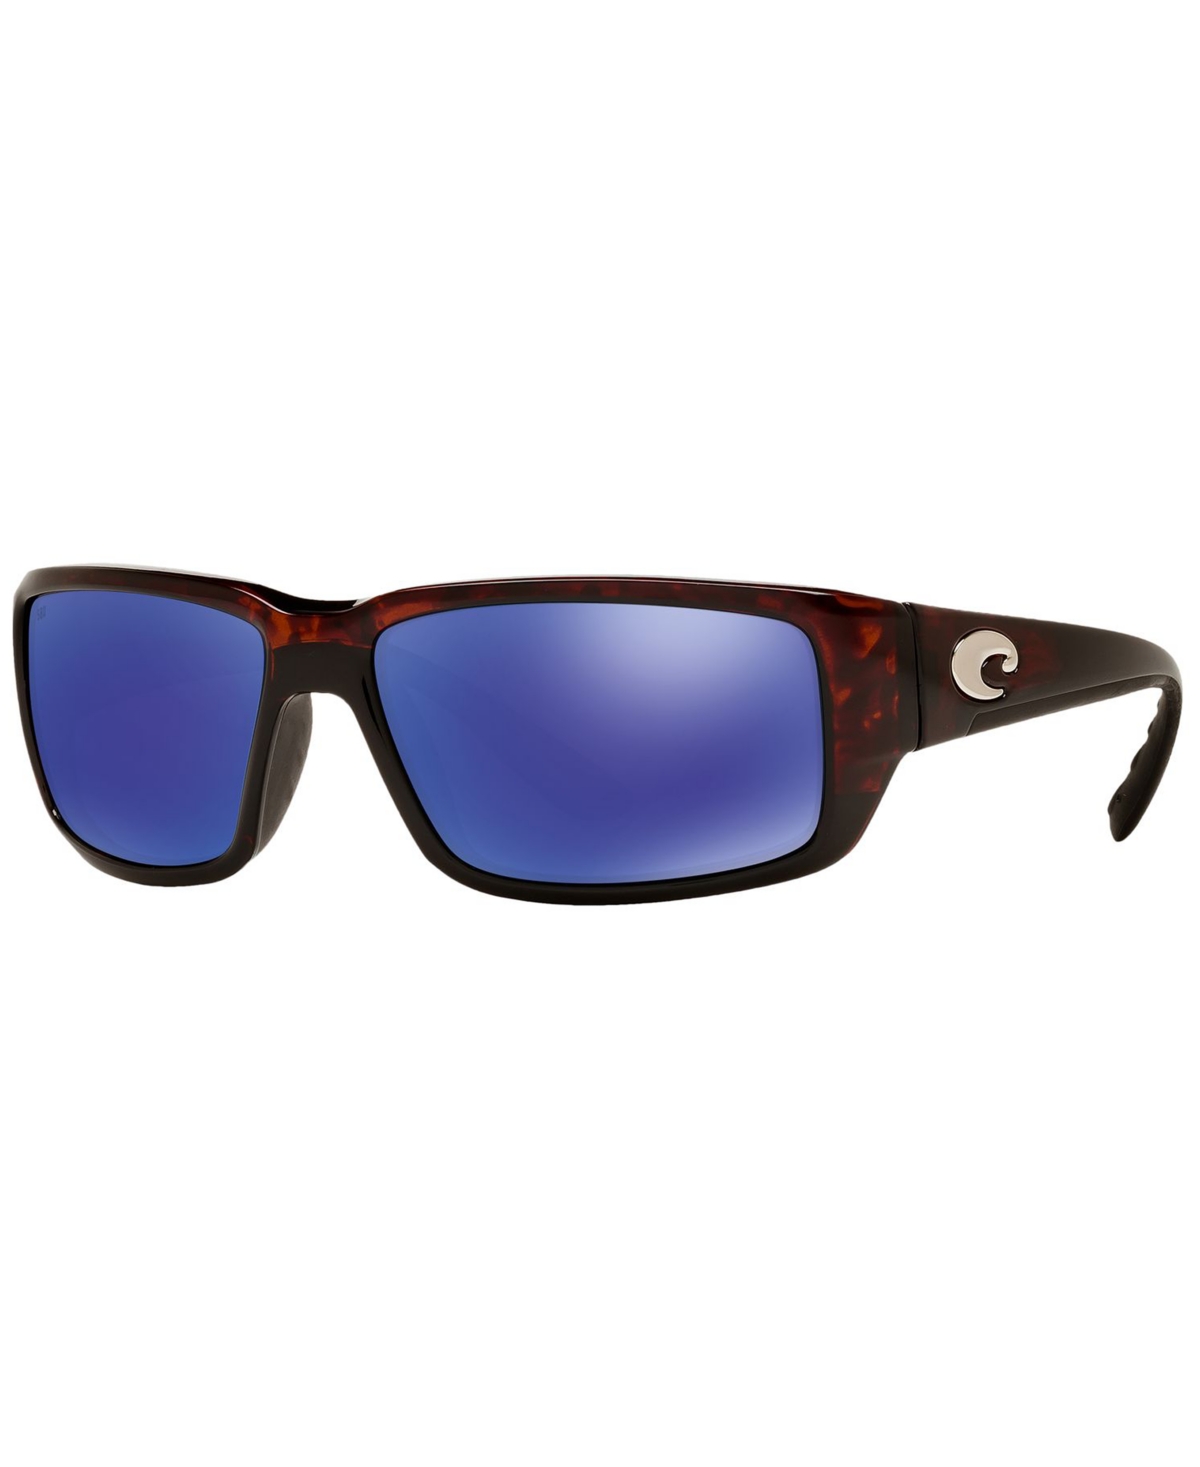 Costa Del Mar Men's Polarized Sunglasses, Fantail In Tortoise,blue Mirror Polar